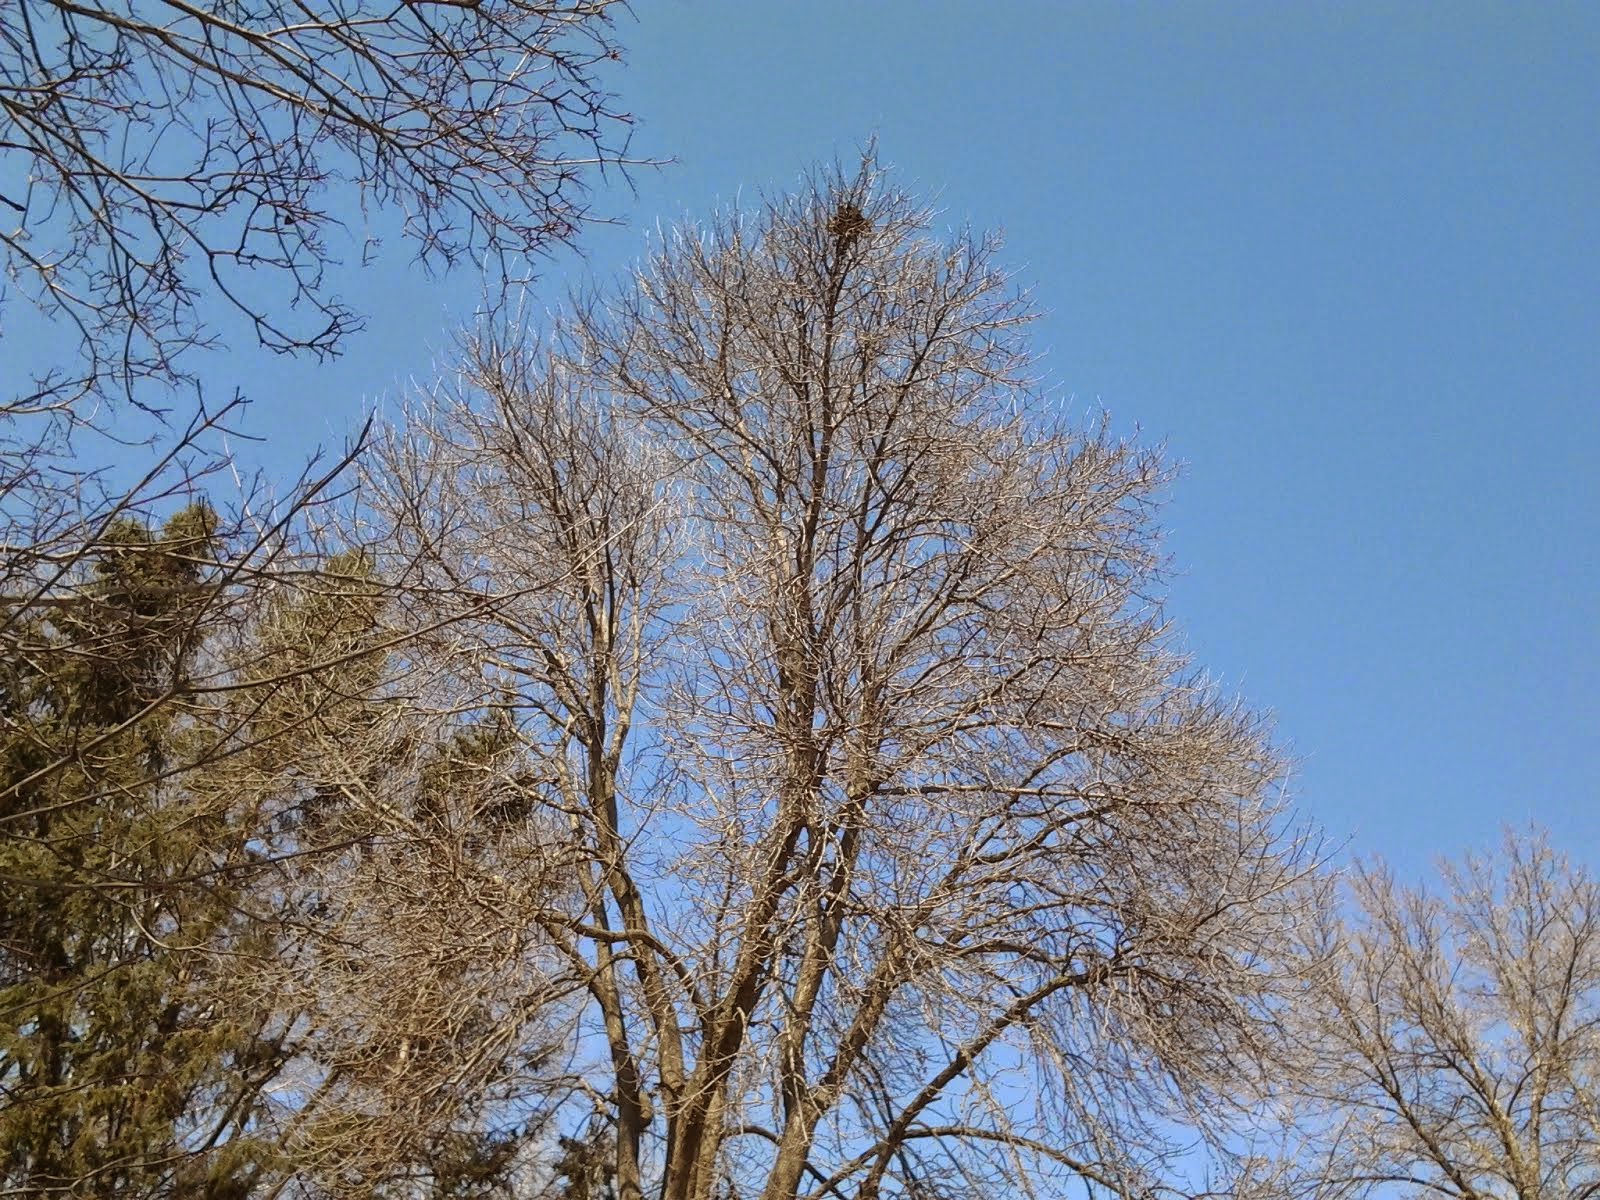 Treetop in spring skies